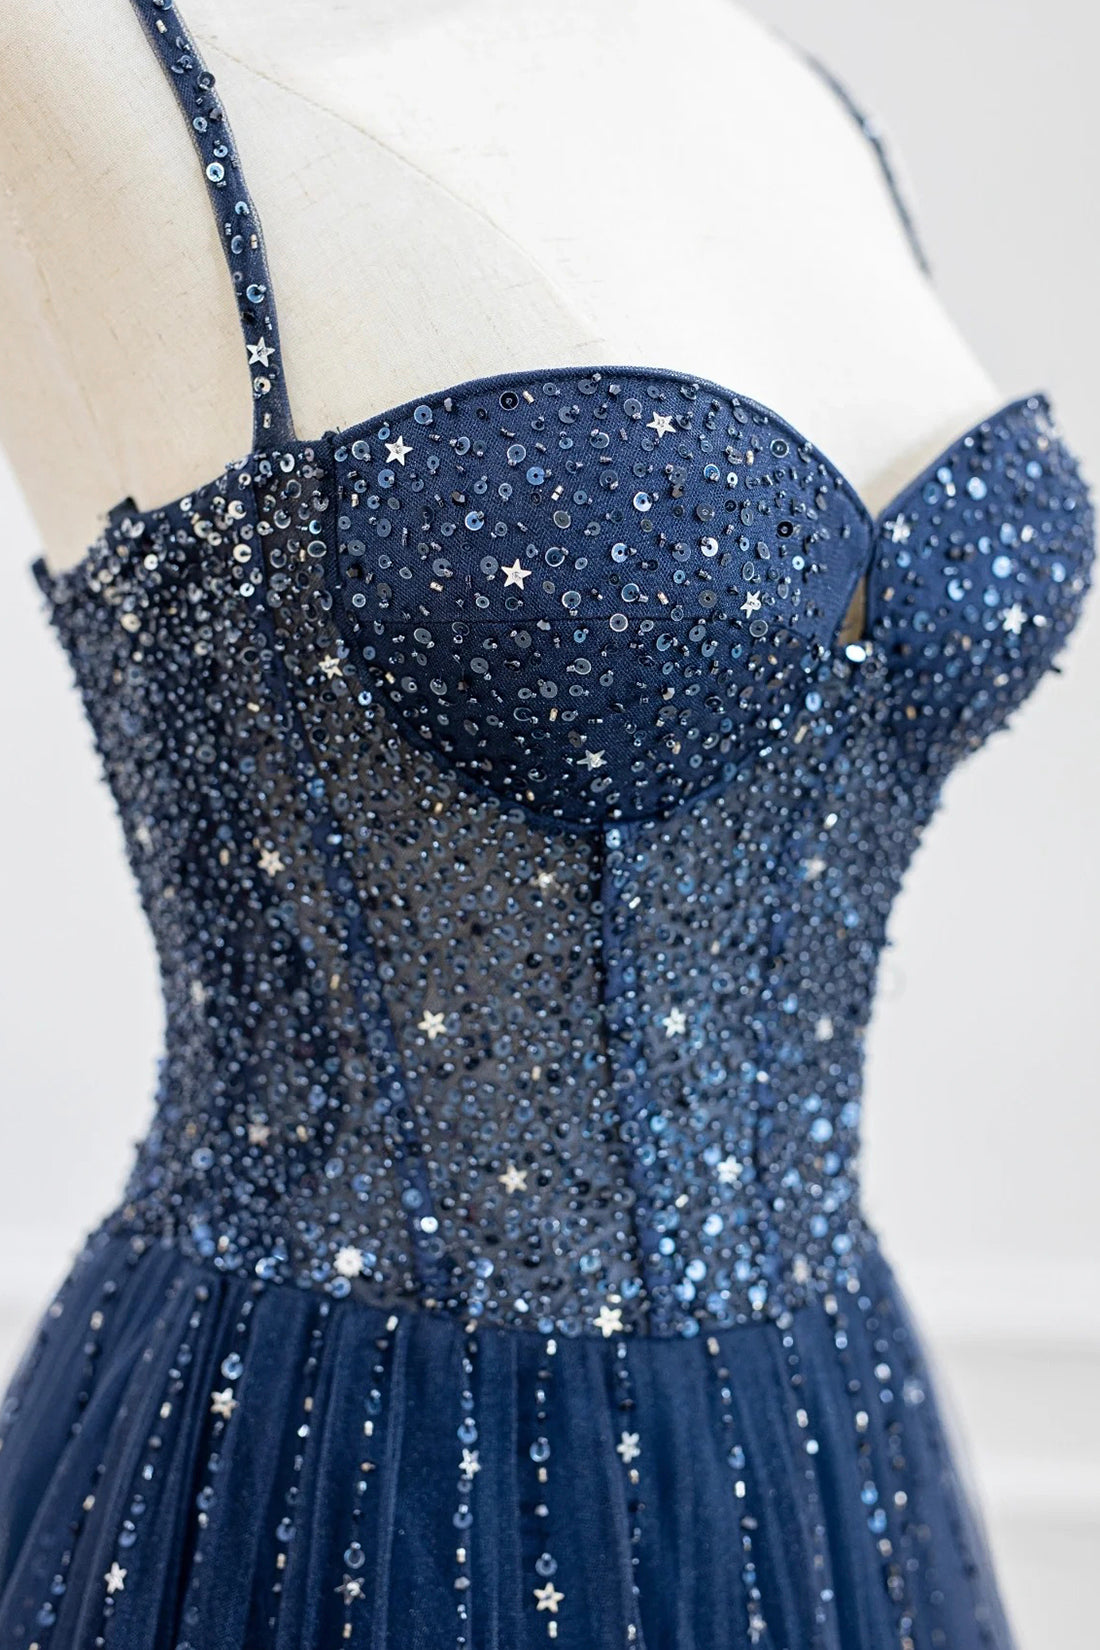 Marceline | Blue Tulle Beaded Long Prom Dress Formal Dress